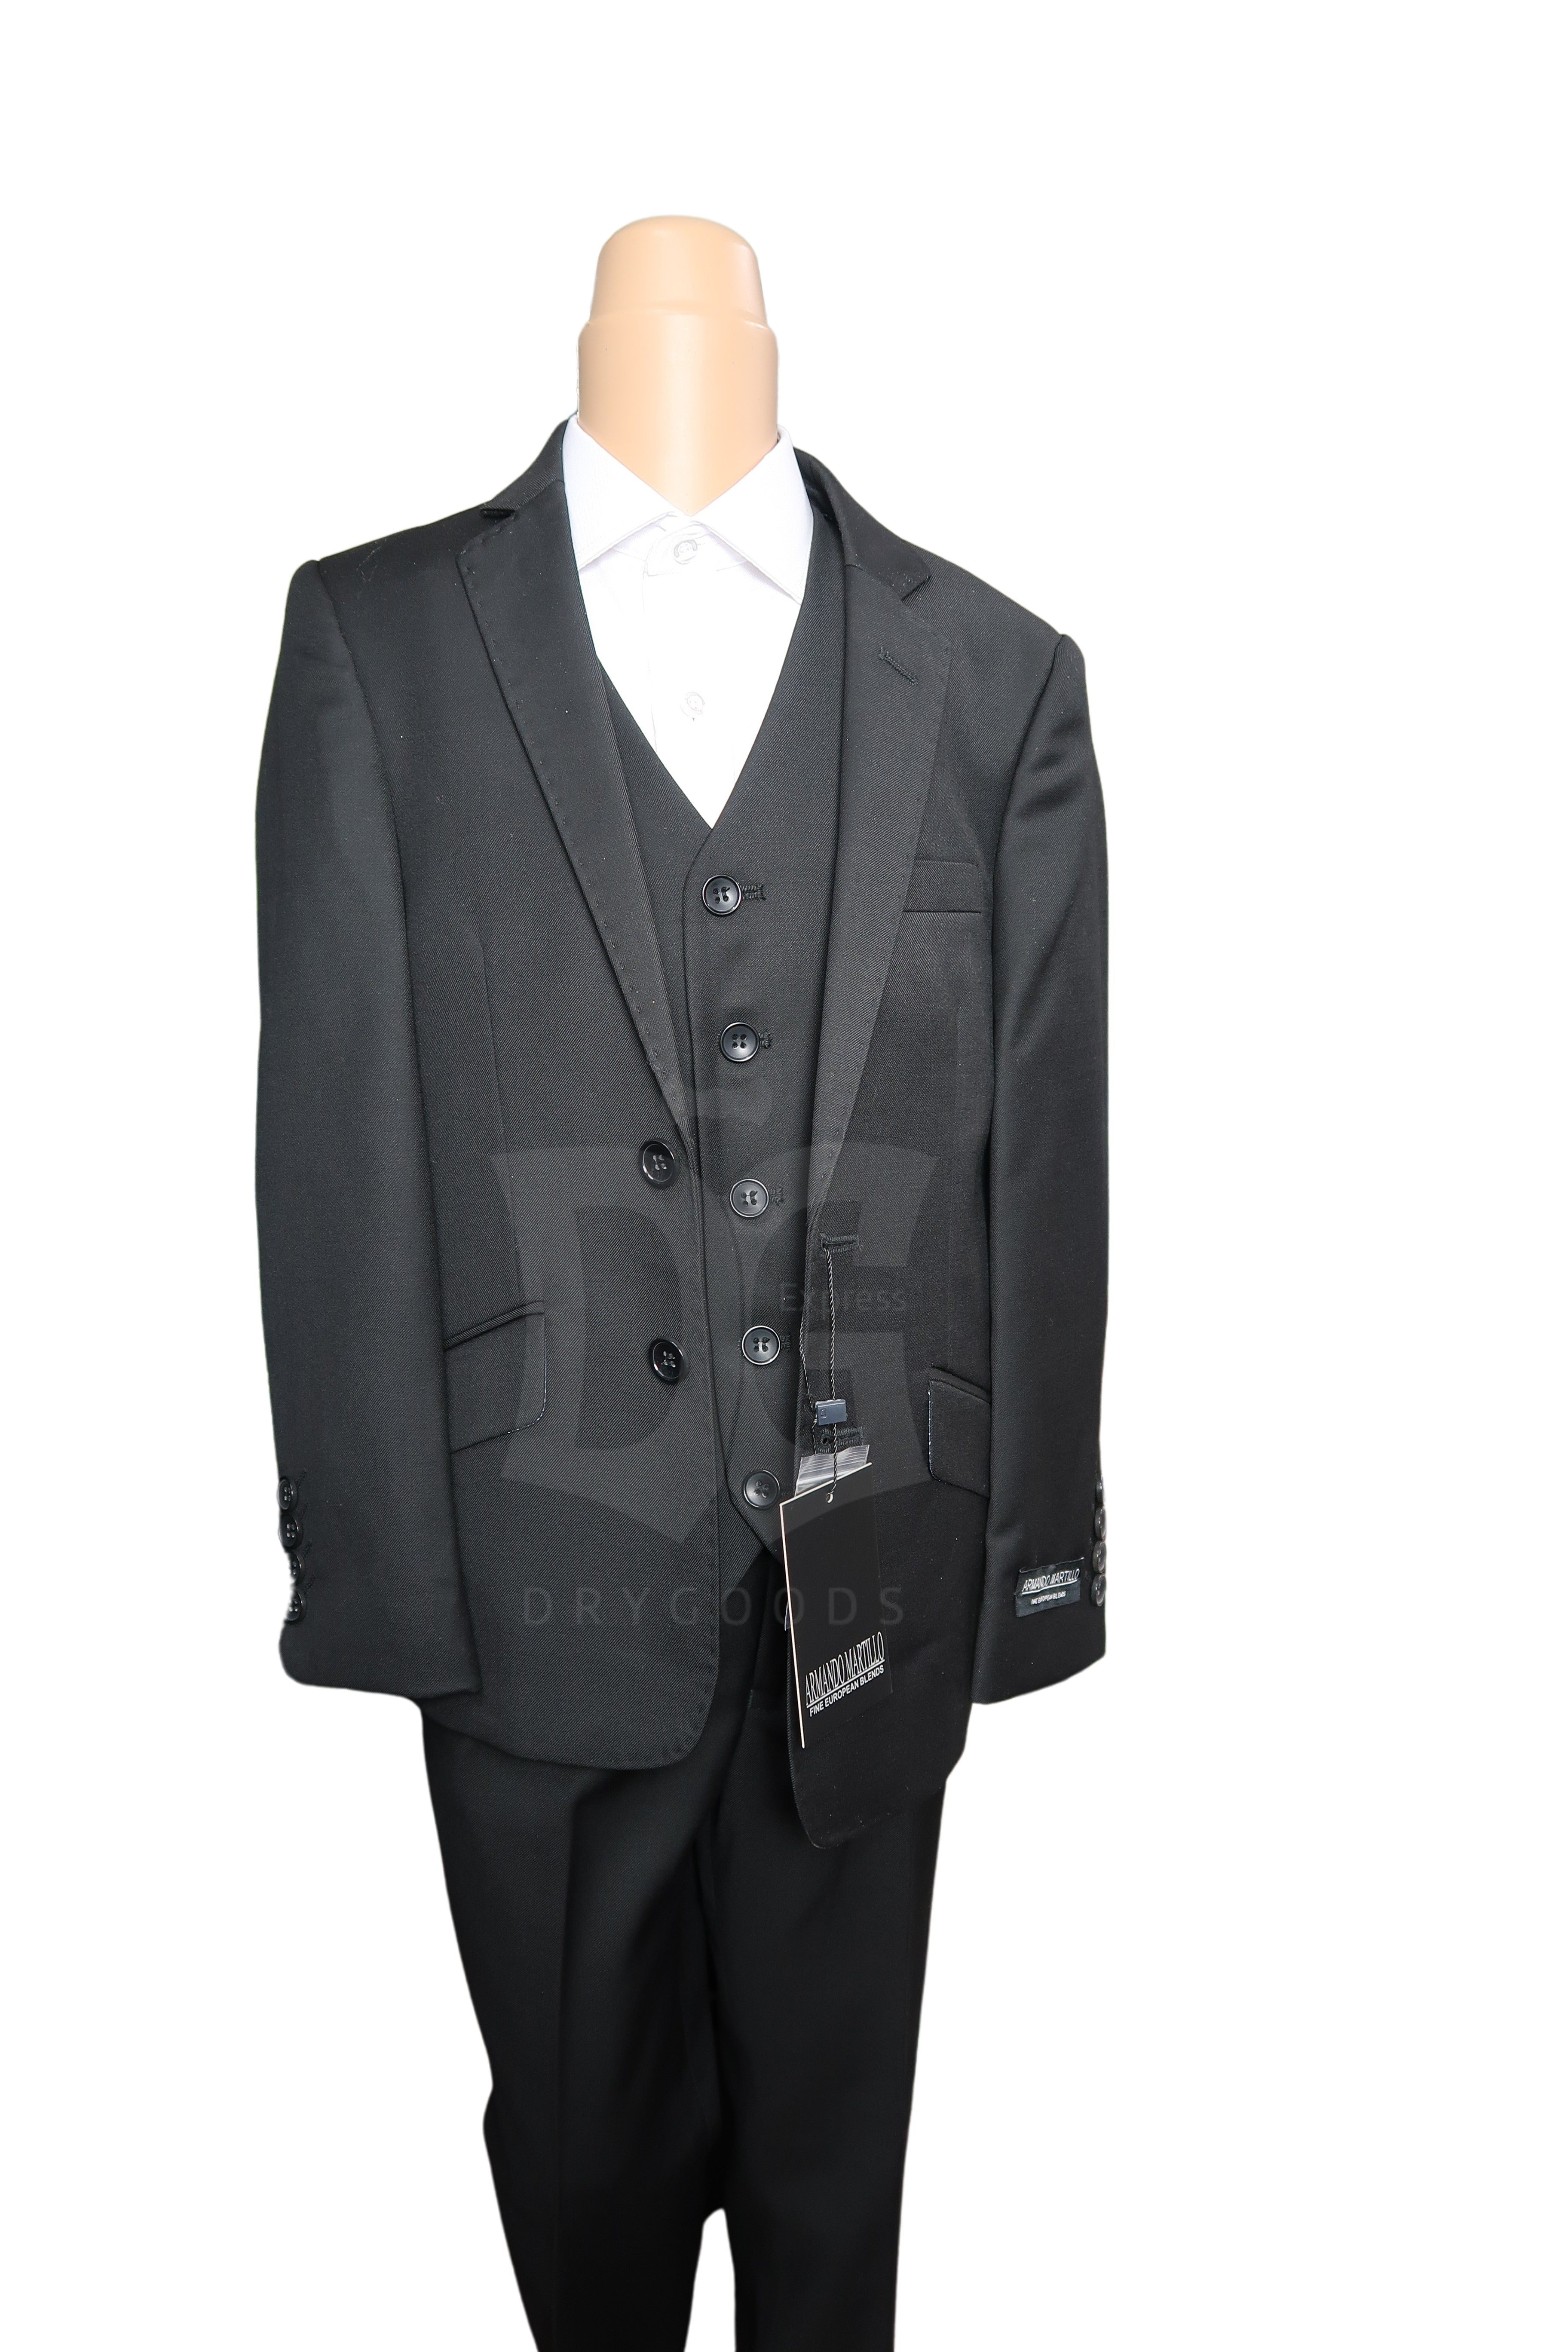 Armando Martillo Boy's Black Suit